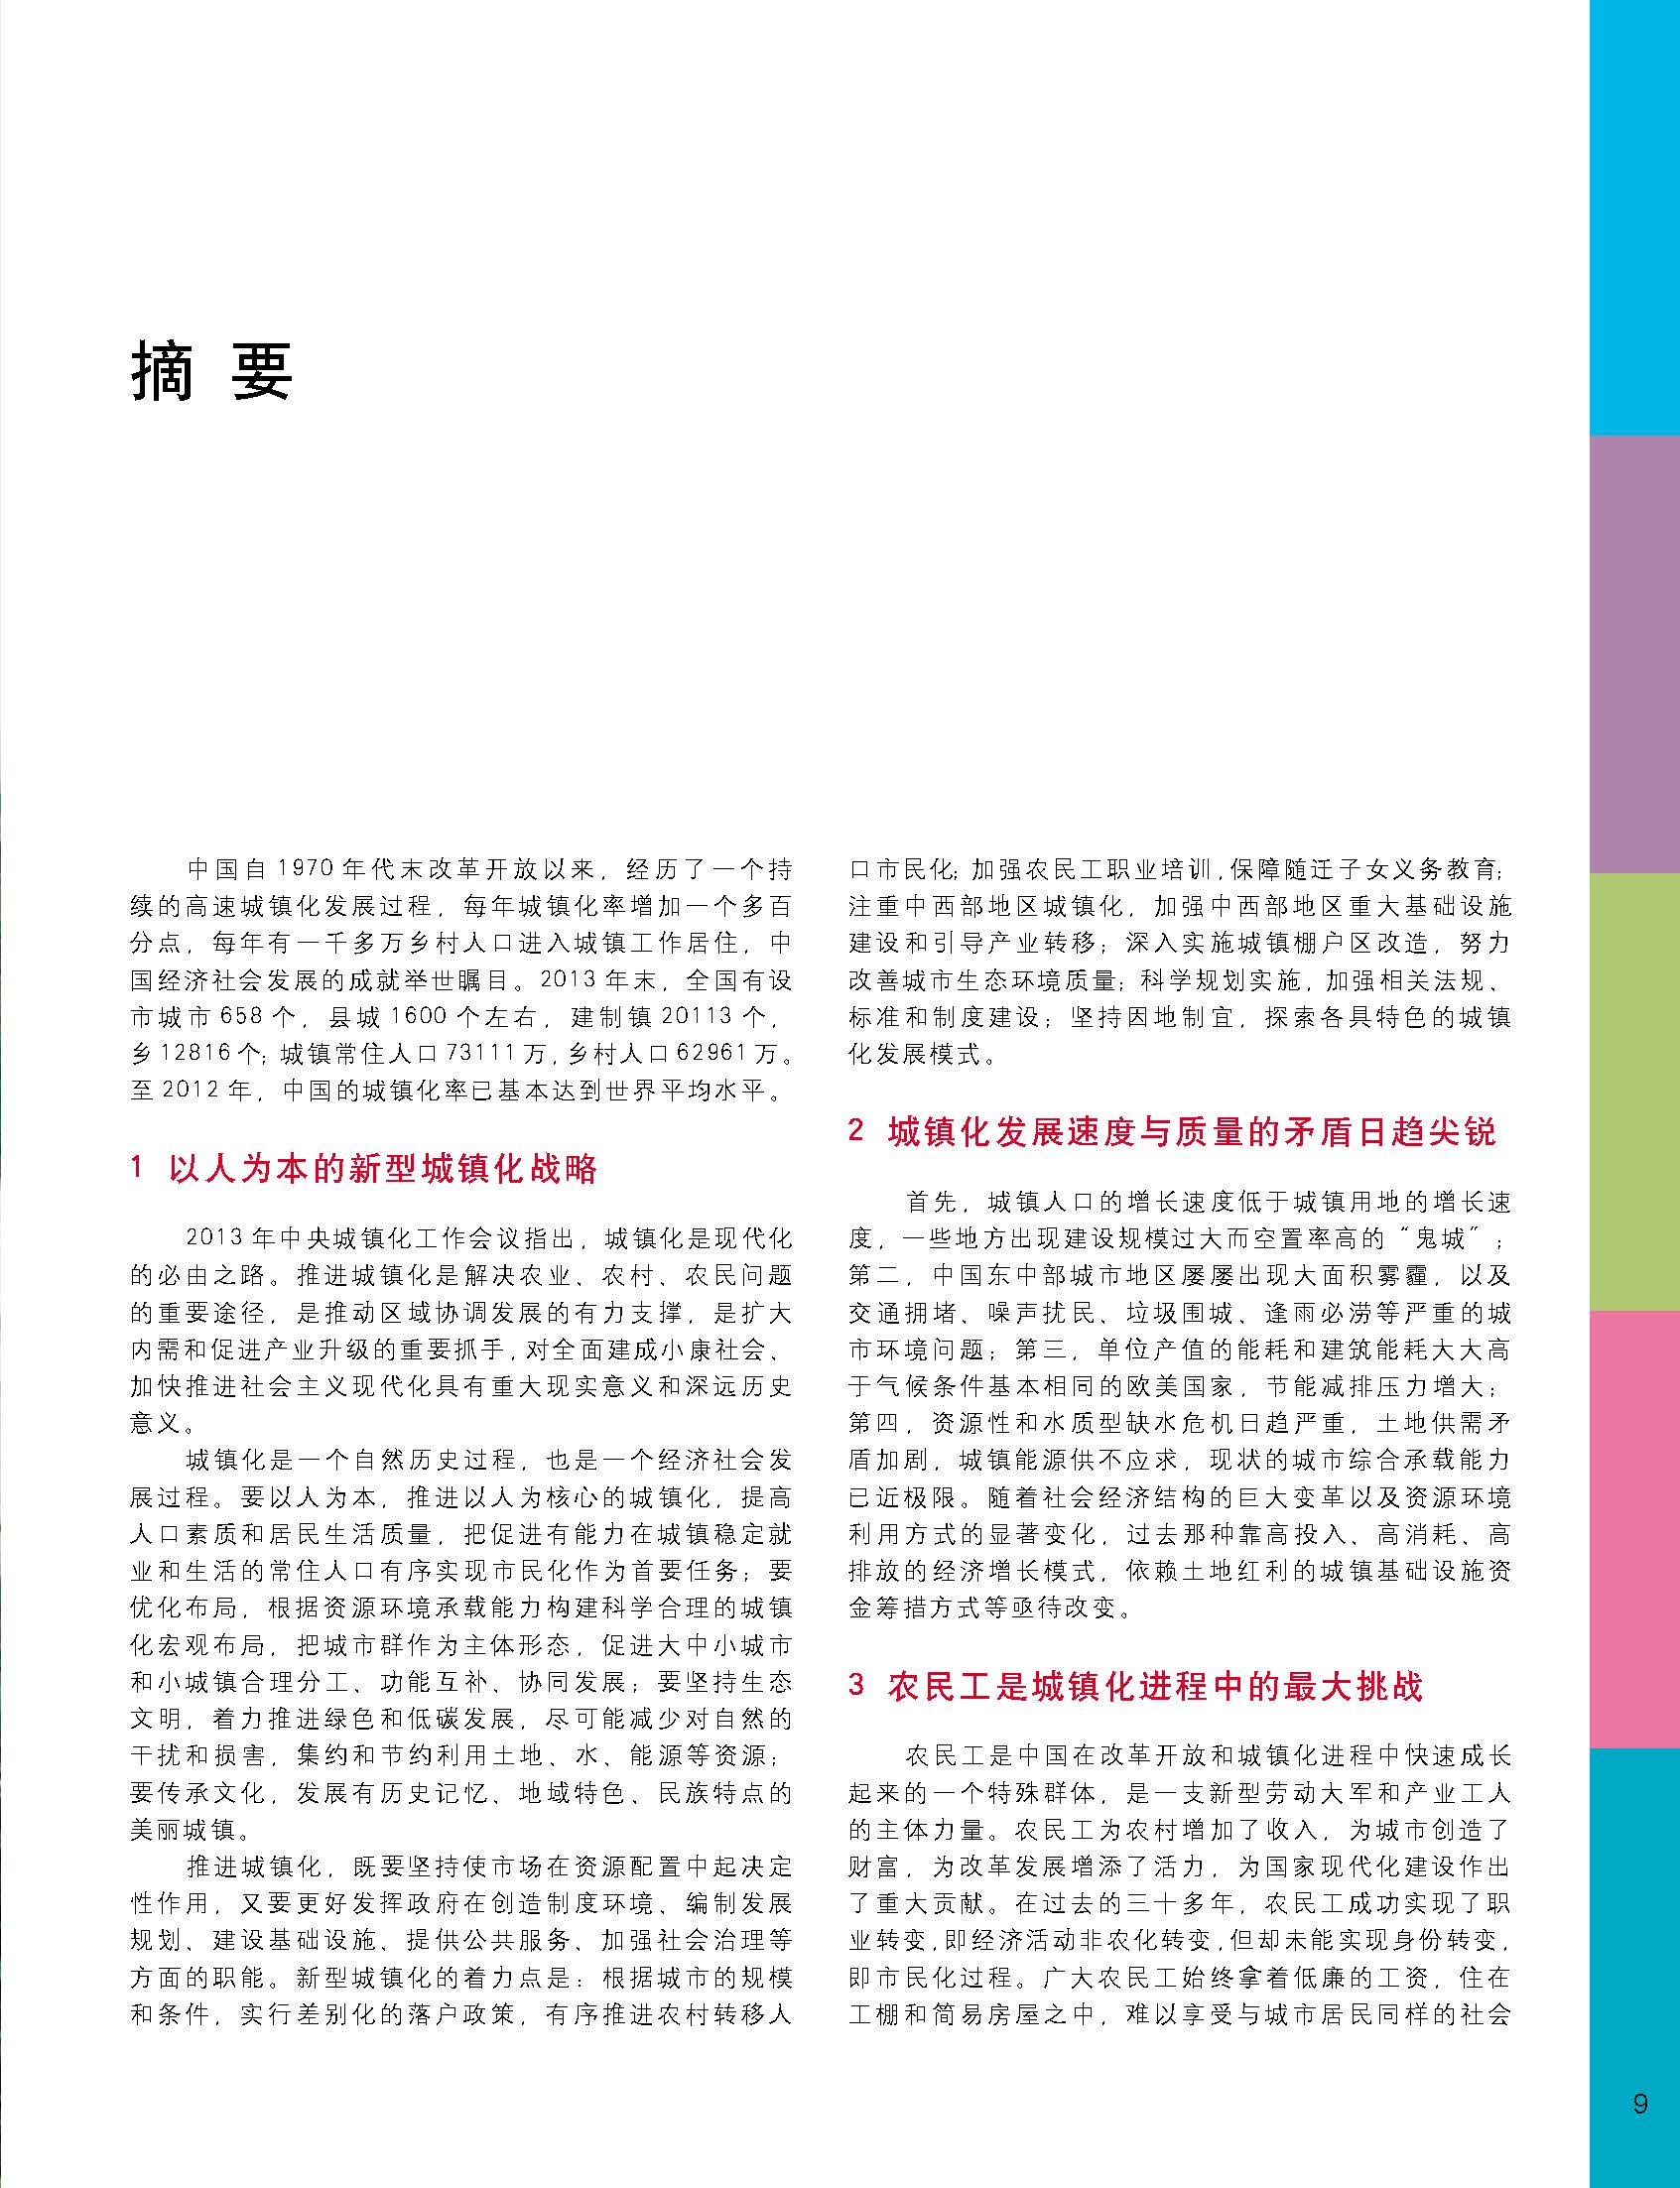 状况报告2014-2015中文 10.jpg